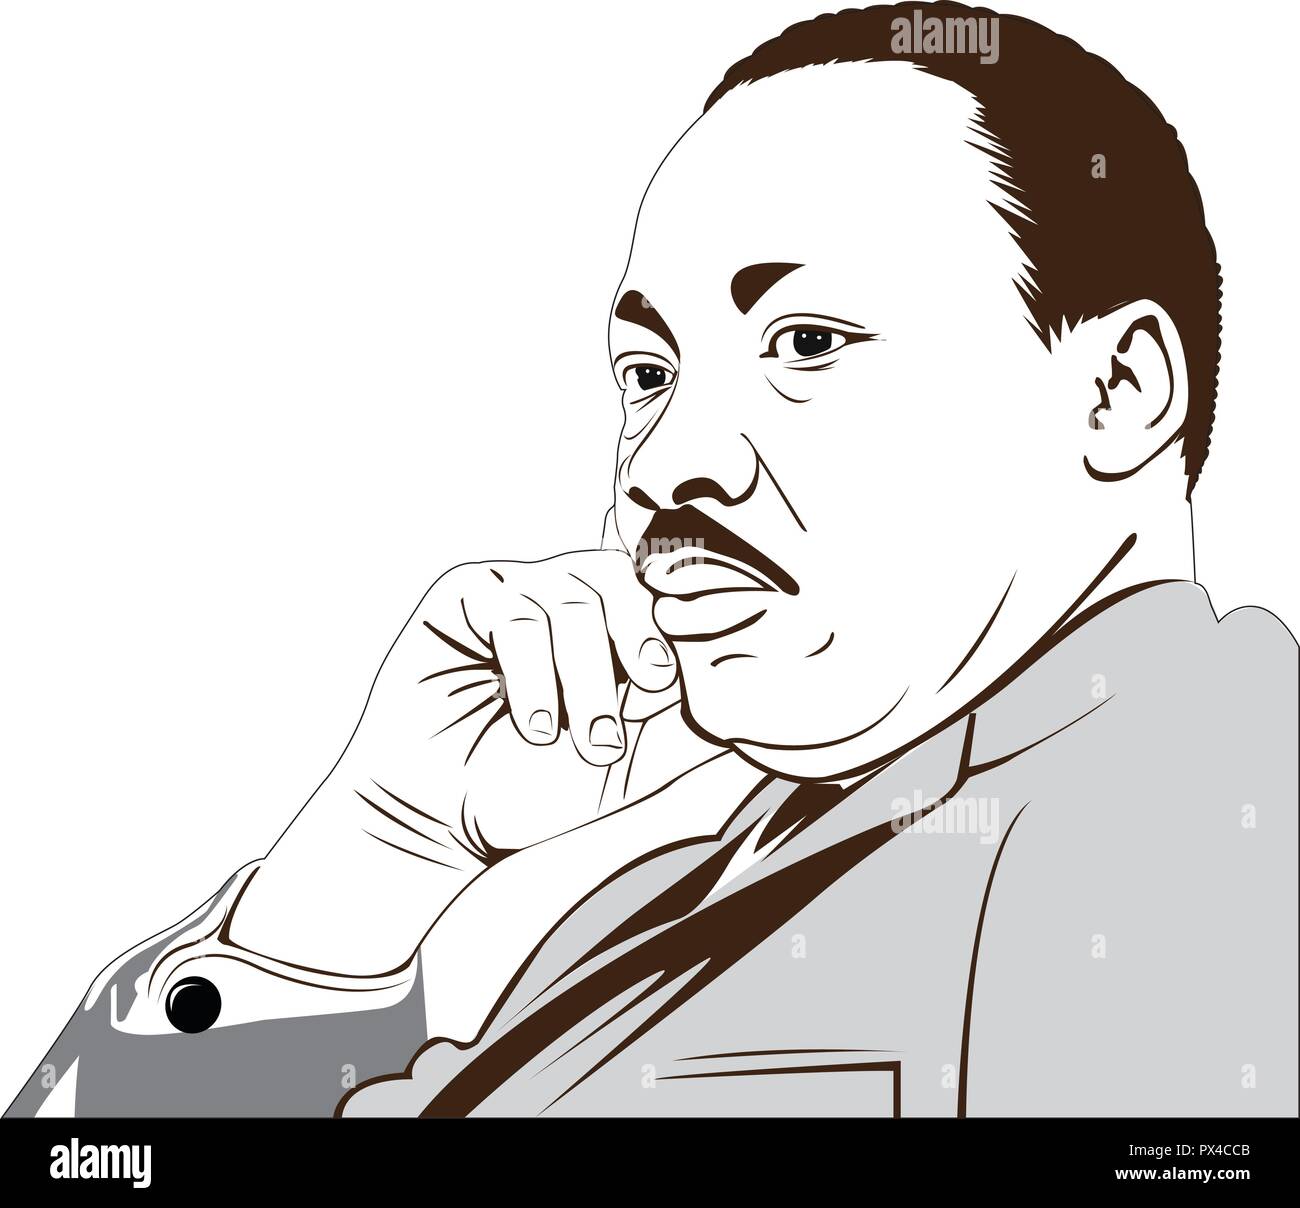 Martin Luther King Jr. (1929 - 1968) ein Amerikaner., wo er seine berühmten geliefert" Ich habe einen Traum' Rede. Vektor Bild von Martin Luther King. Stock Vektor